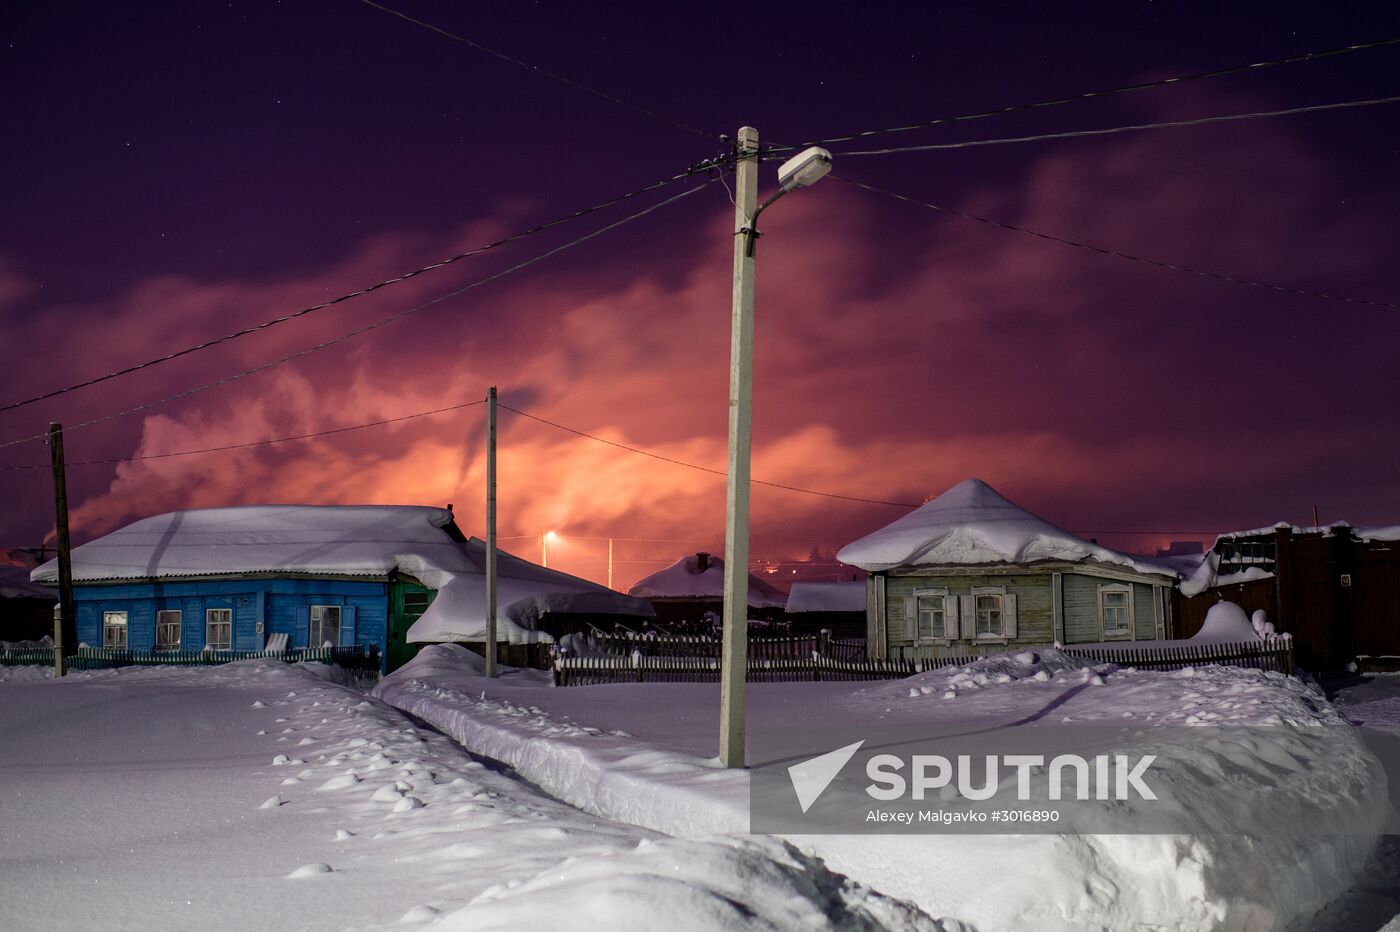 Winter in Omsk Region